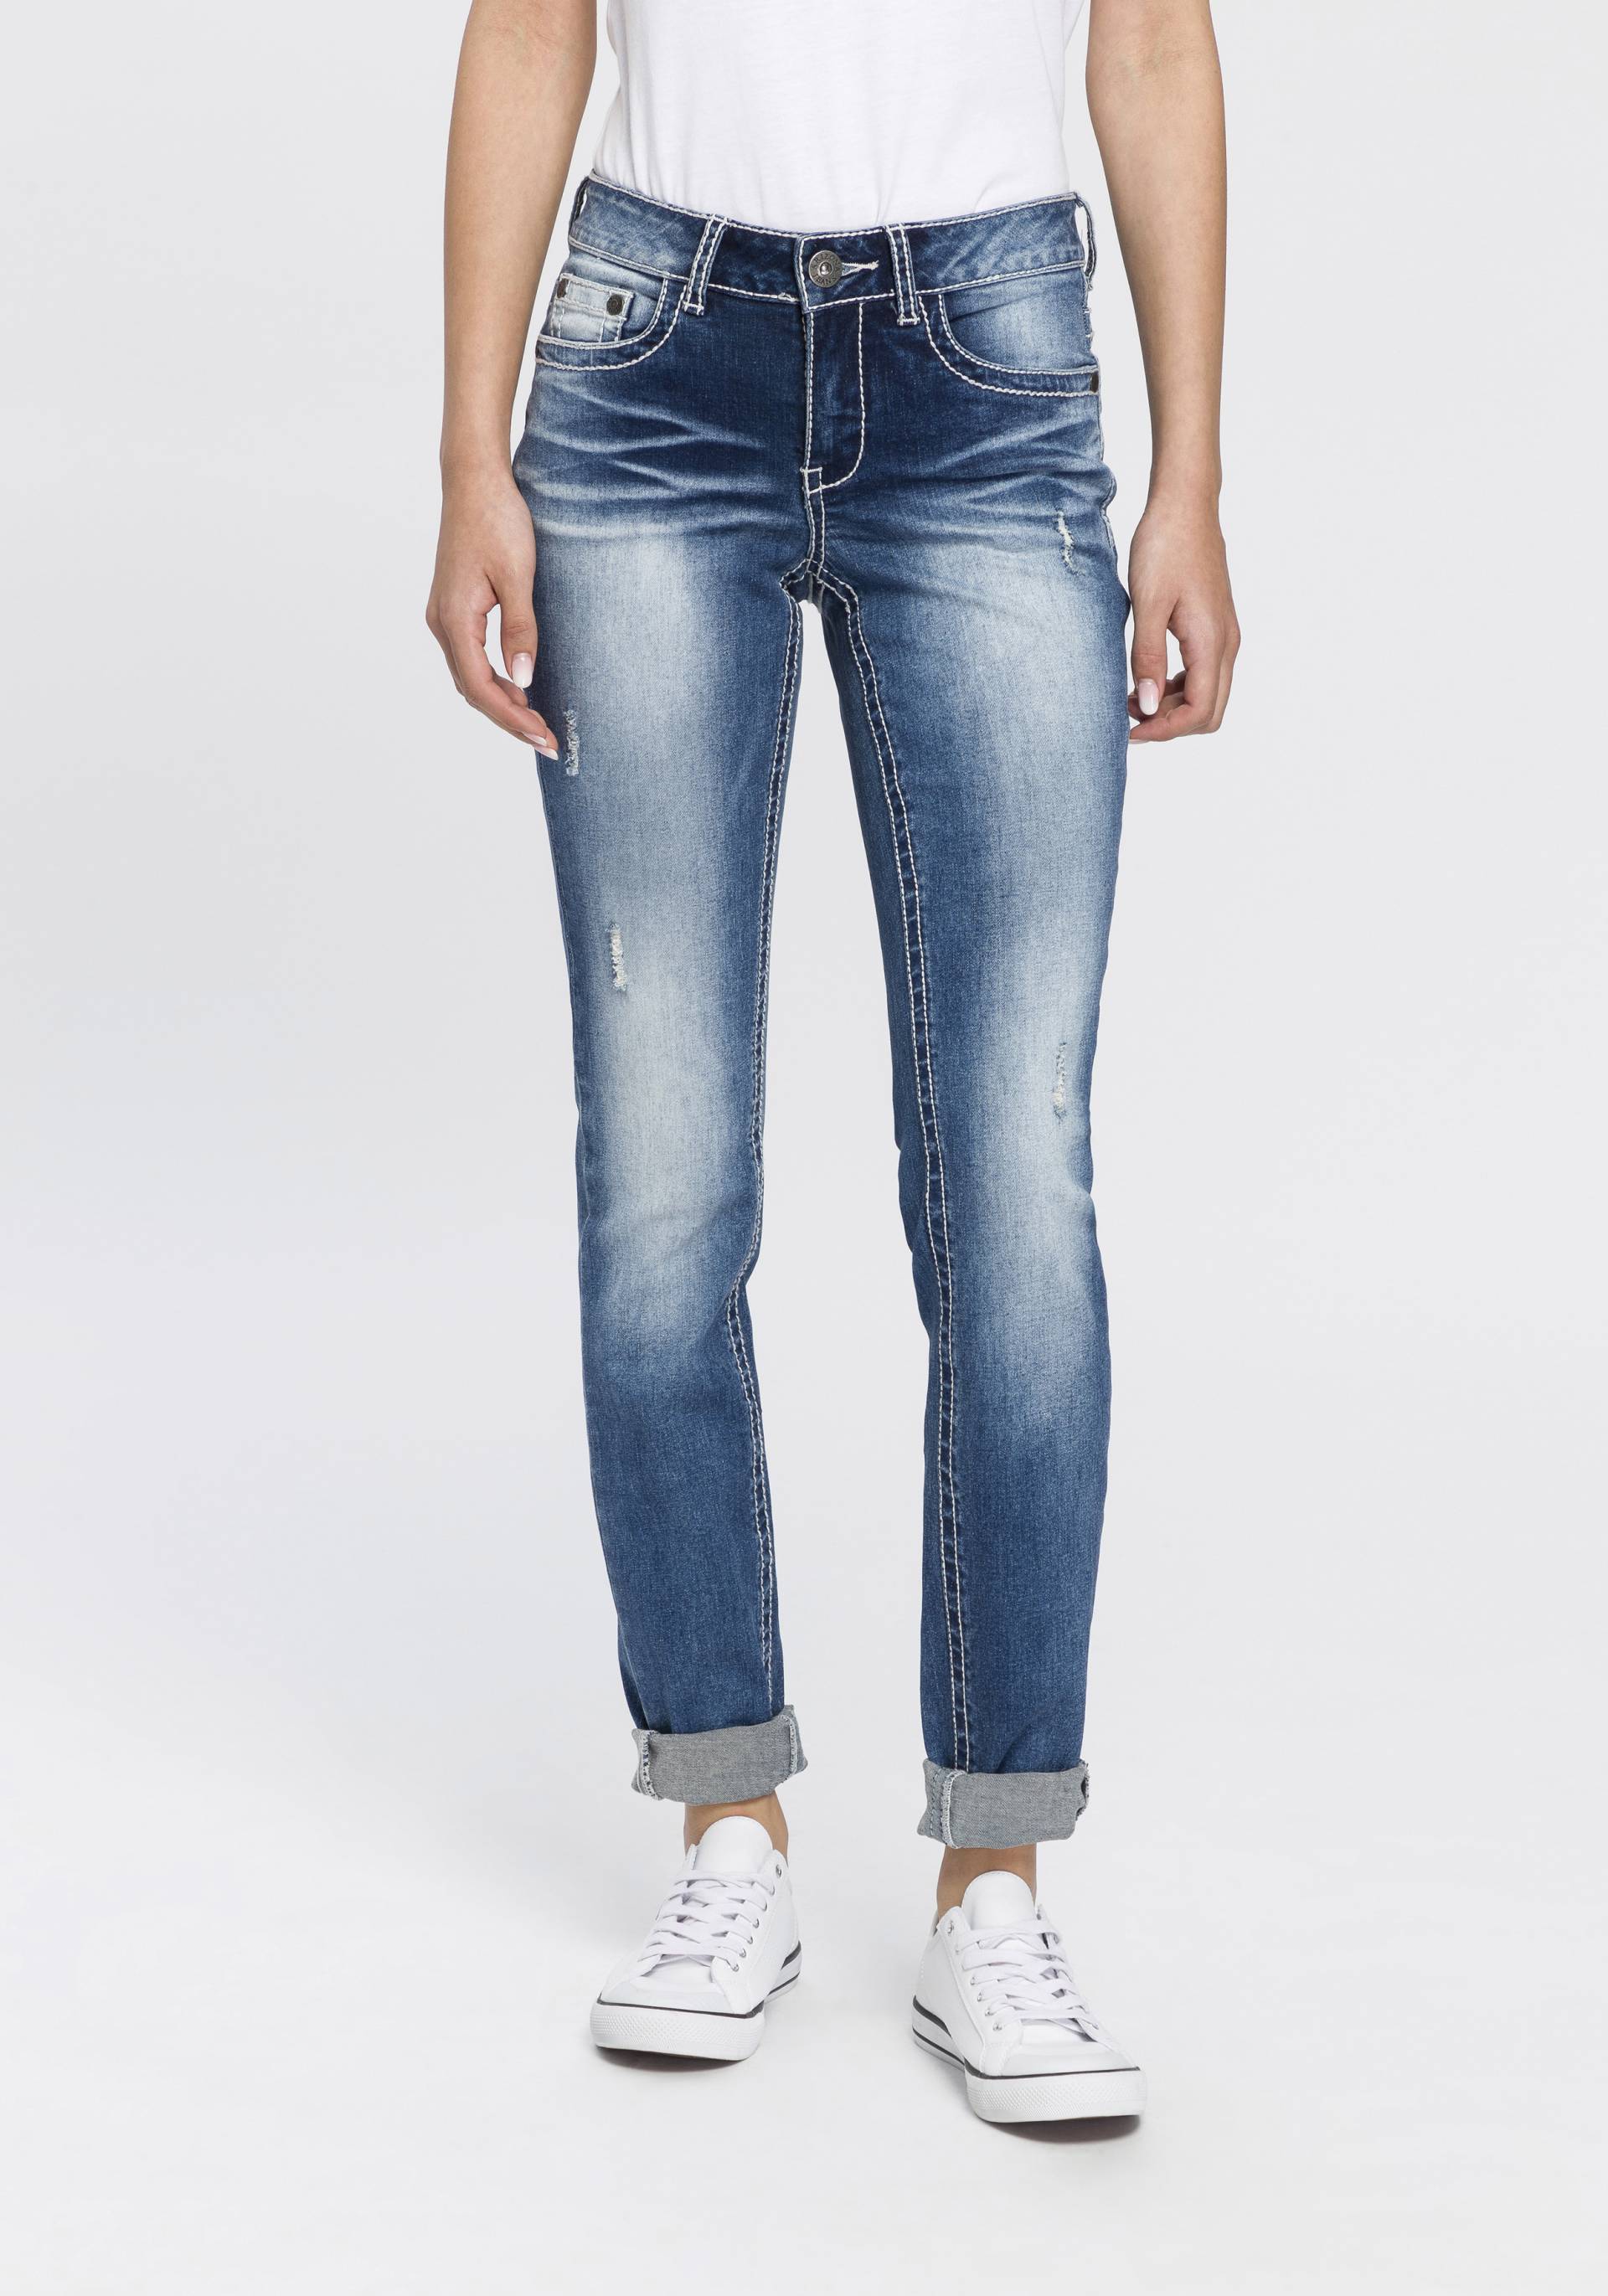 Arizona Skinny-fit-Jeans »mit Kontrastnähten und Pattentaschen« von Arizona